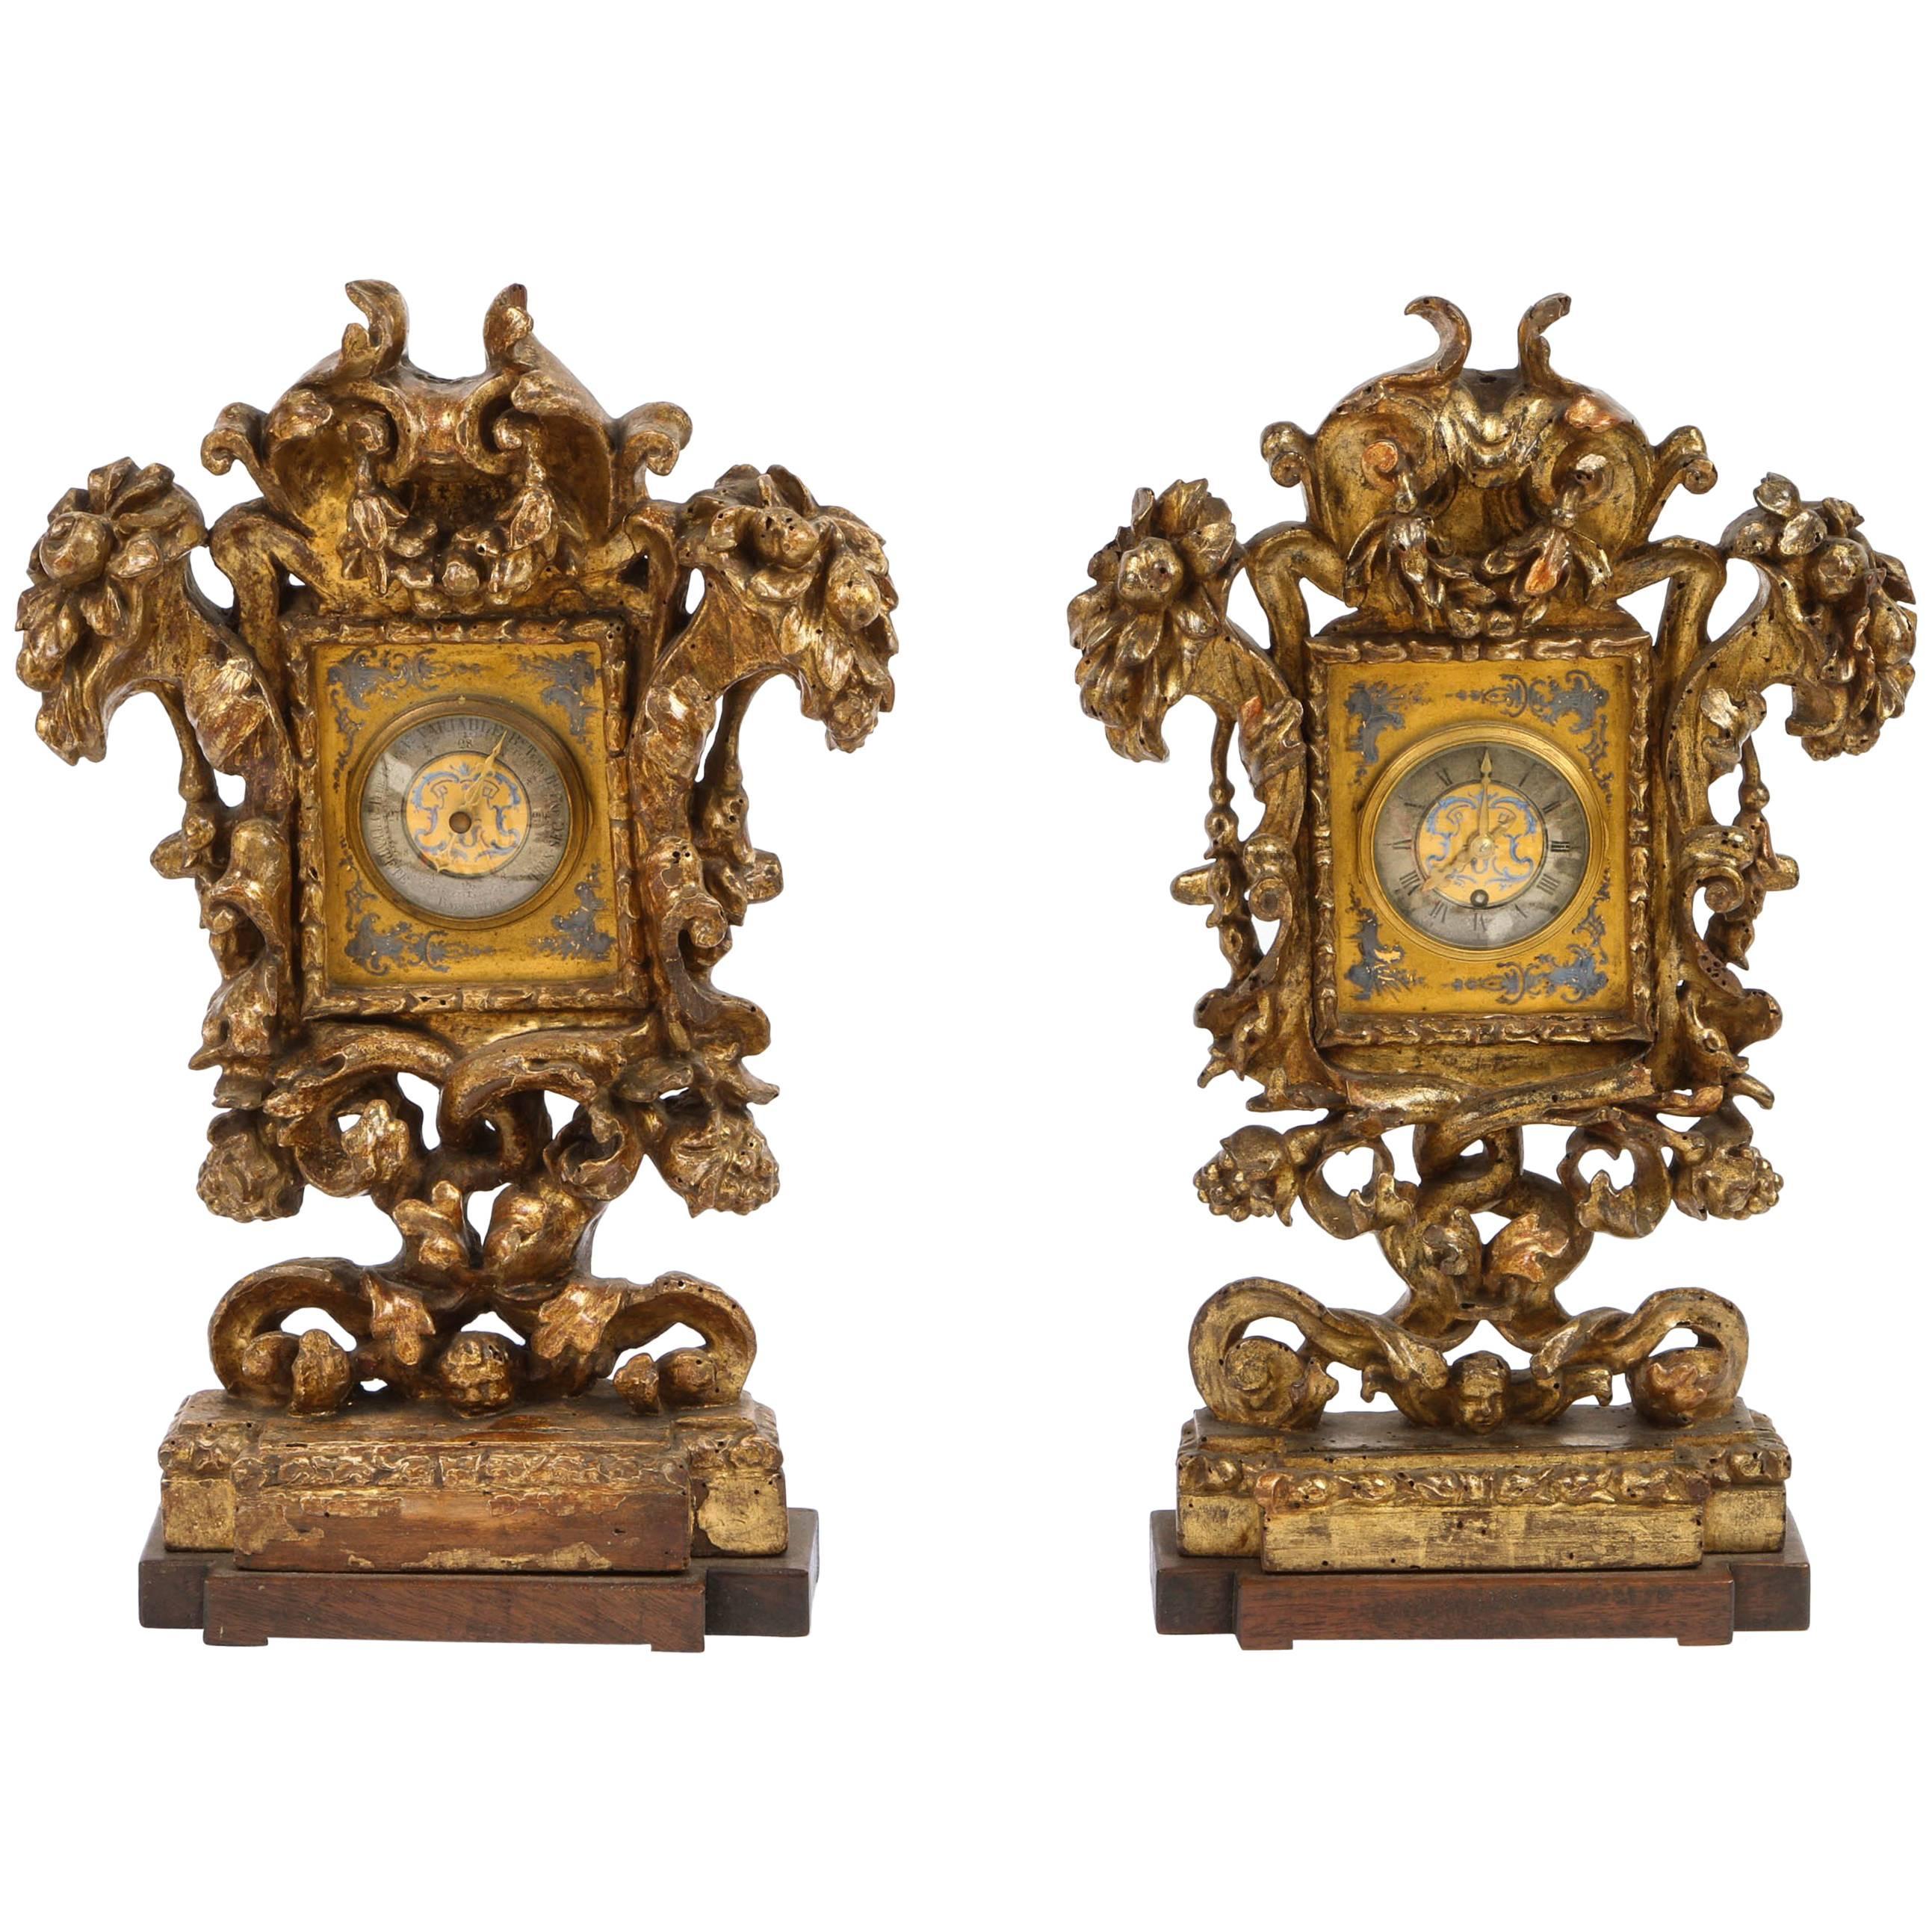 Paire d'horloges et de baromètres italiens du XVIIIe siècle